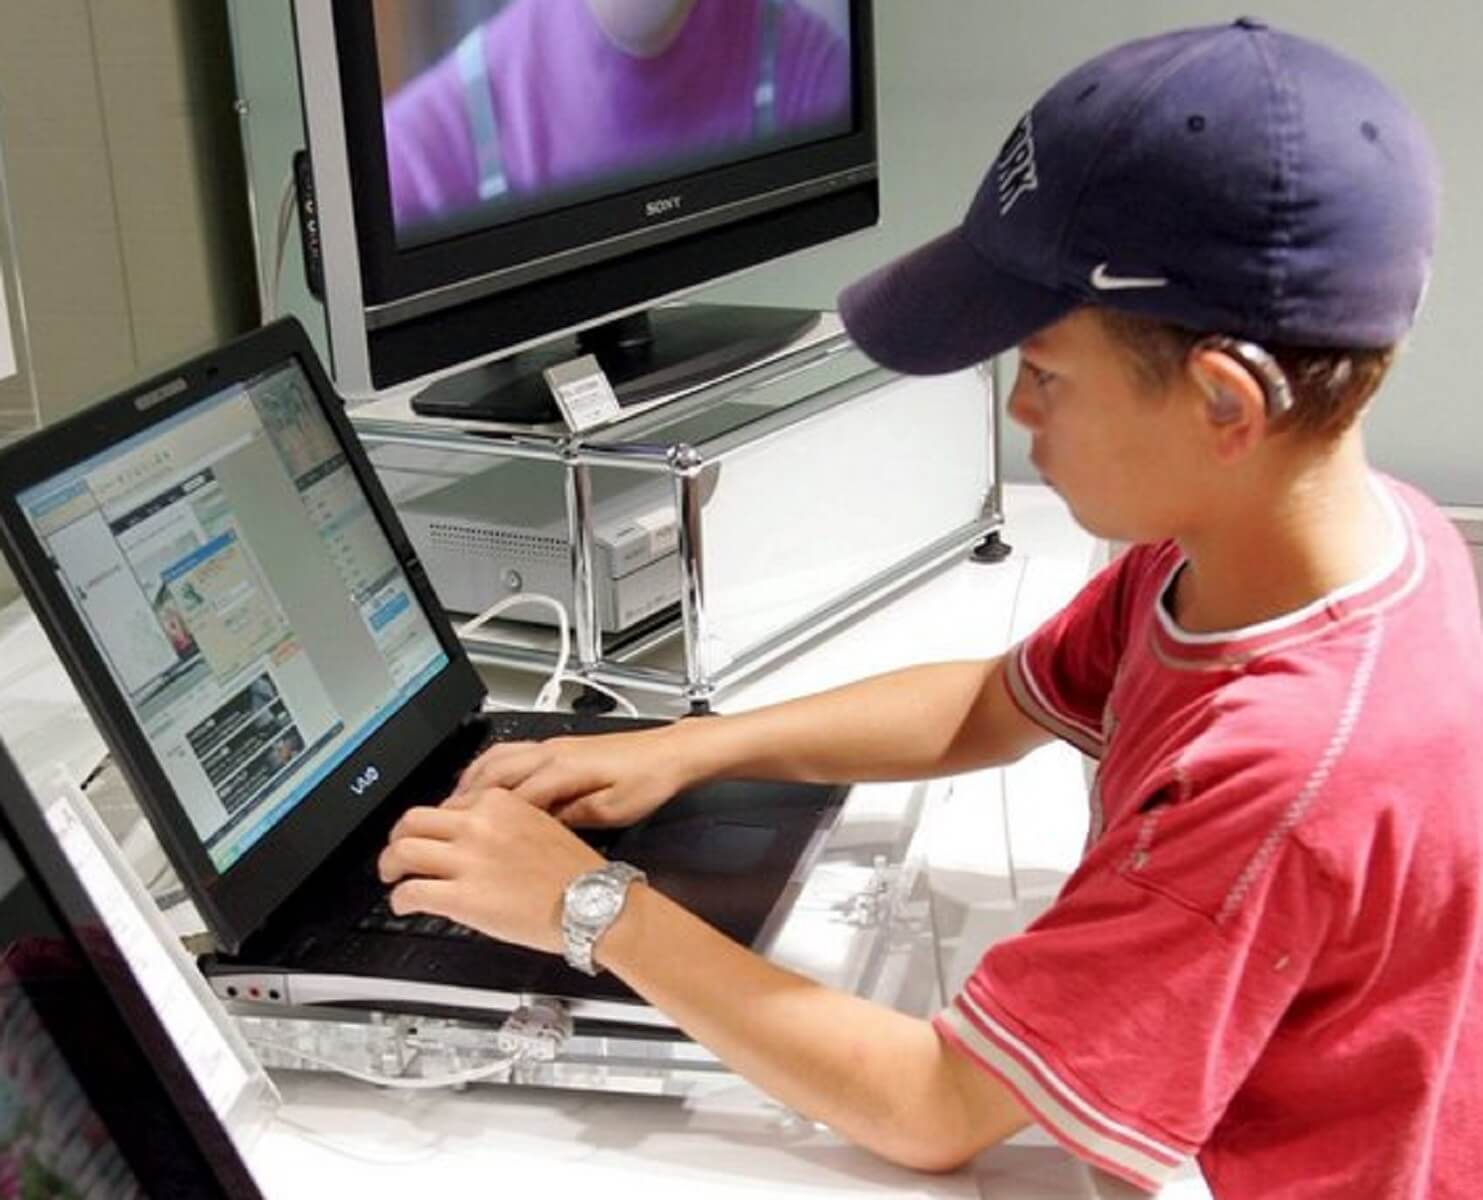 “Παγίδες” παιδόφιλων και διαδικτυακός εκβιασμός: Πώς θα προστατεύσετε τα παιδιά σας